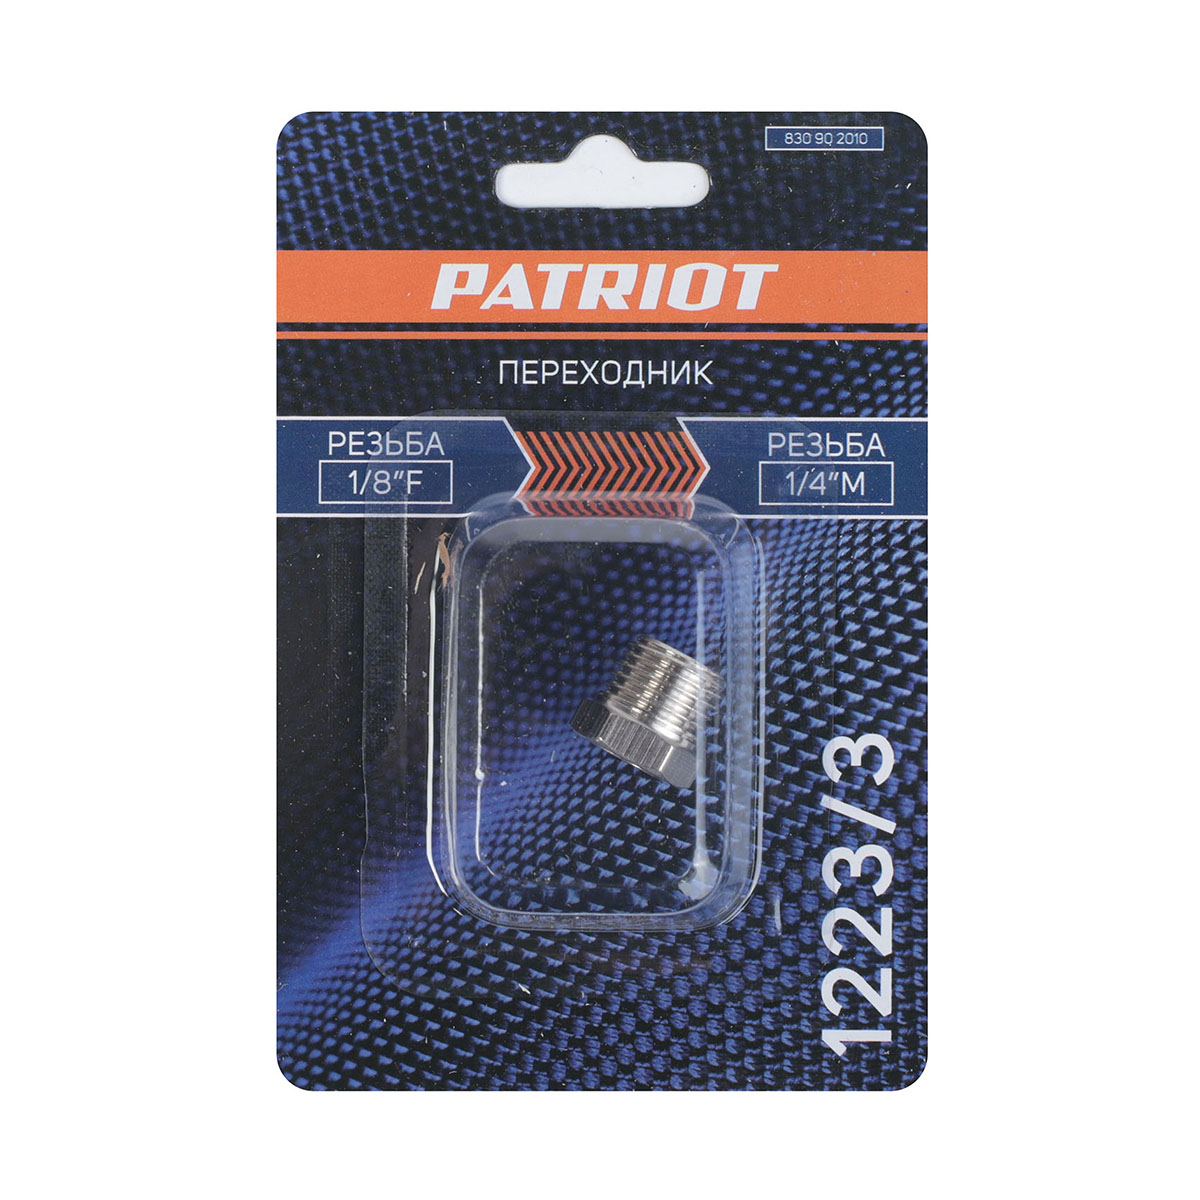 Переходник для компрессора 1223/3 (1/4"m - 1/8"f) (1/10) "patriot" 830902010